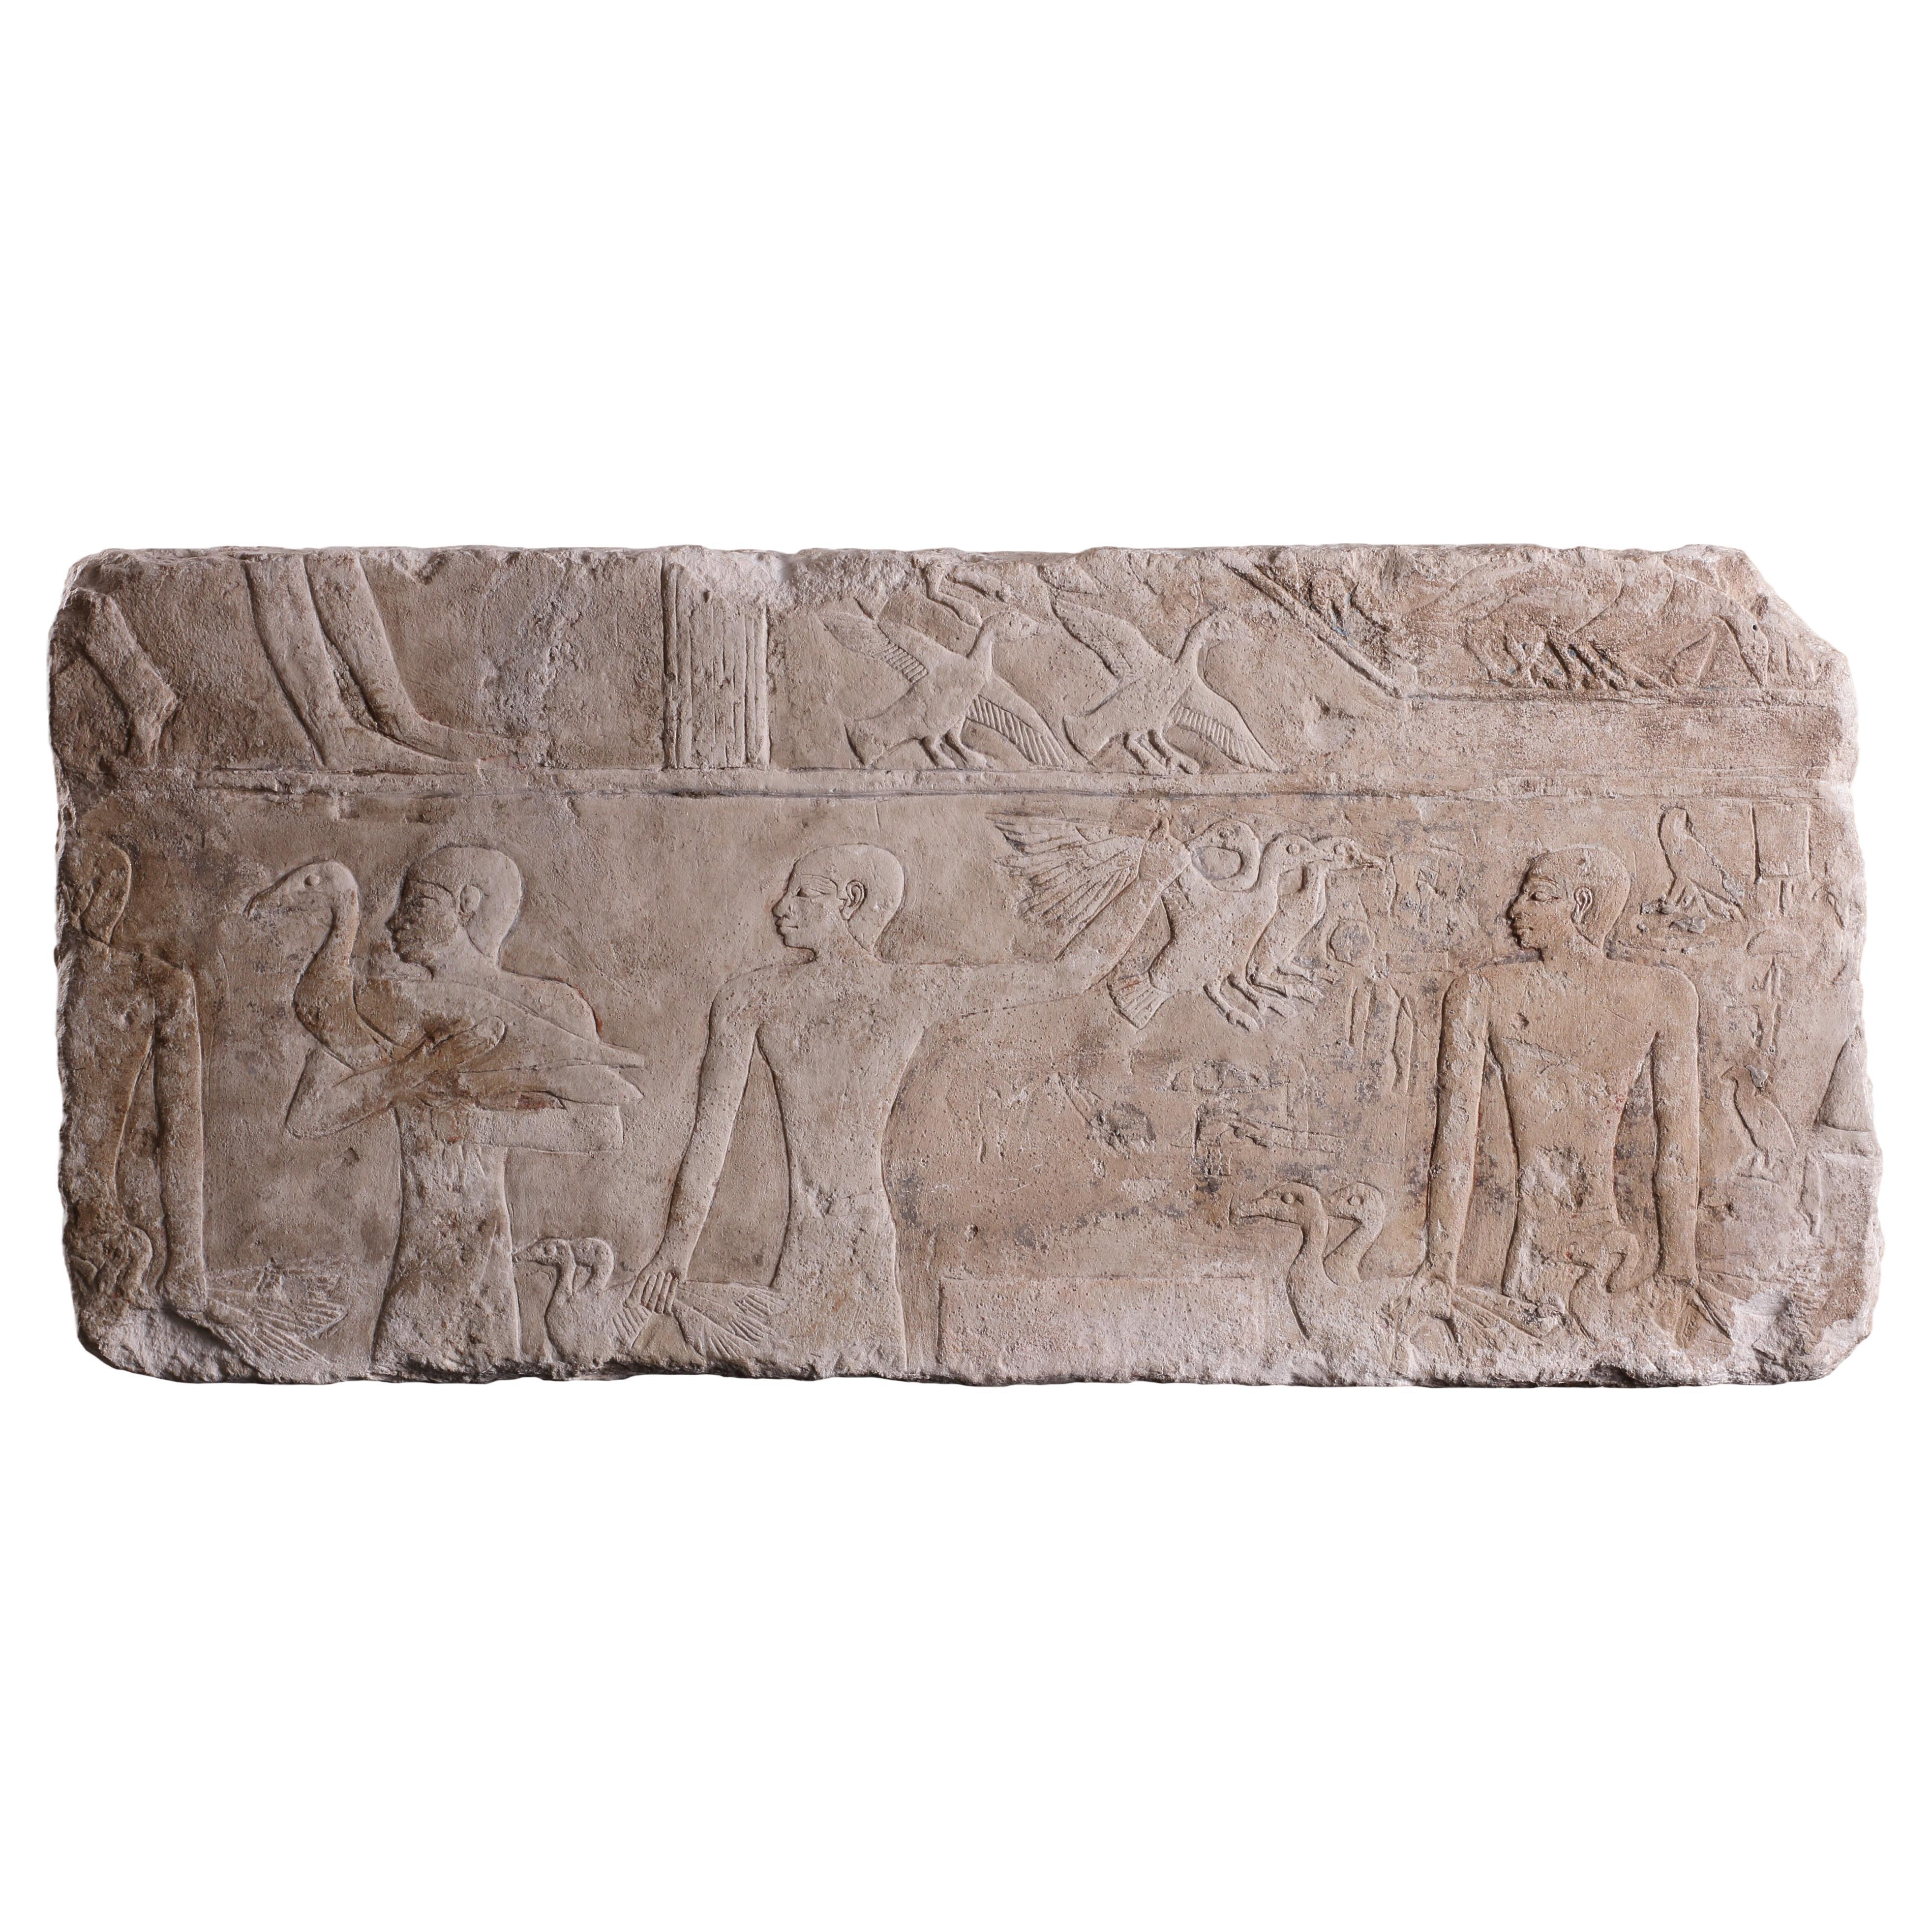 Ein feines und großes Relief aus ägyptischem Kalkstein in Flachrelief geschnitzt